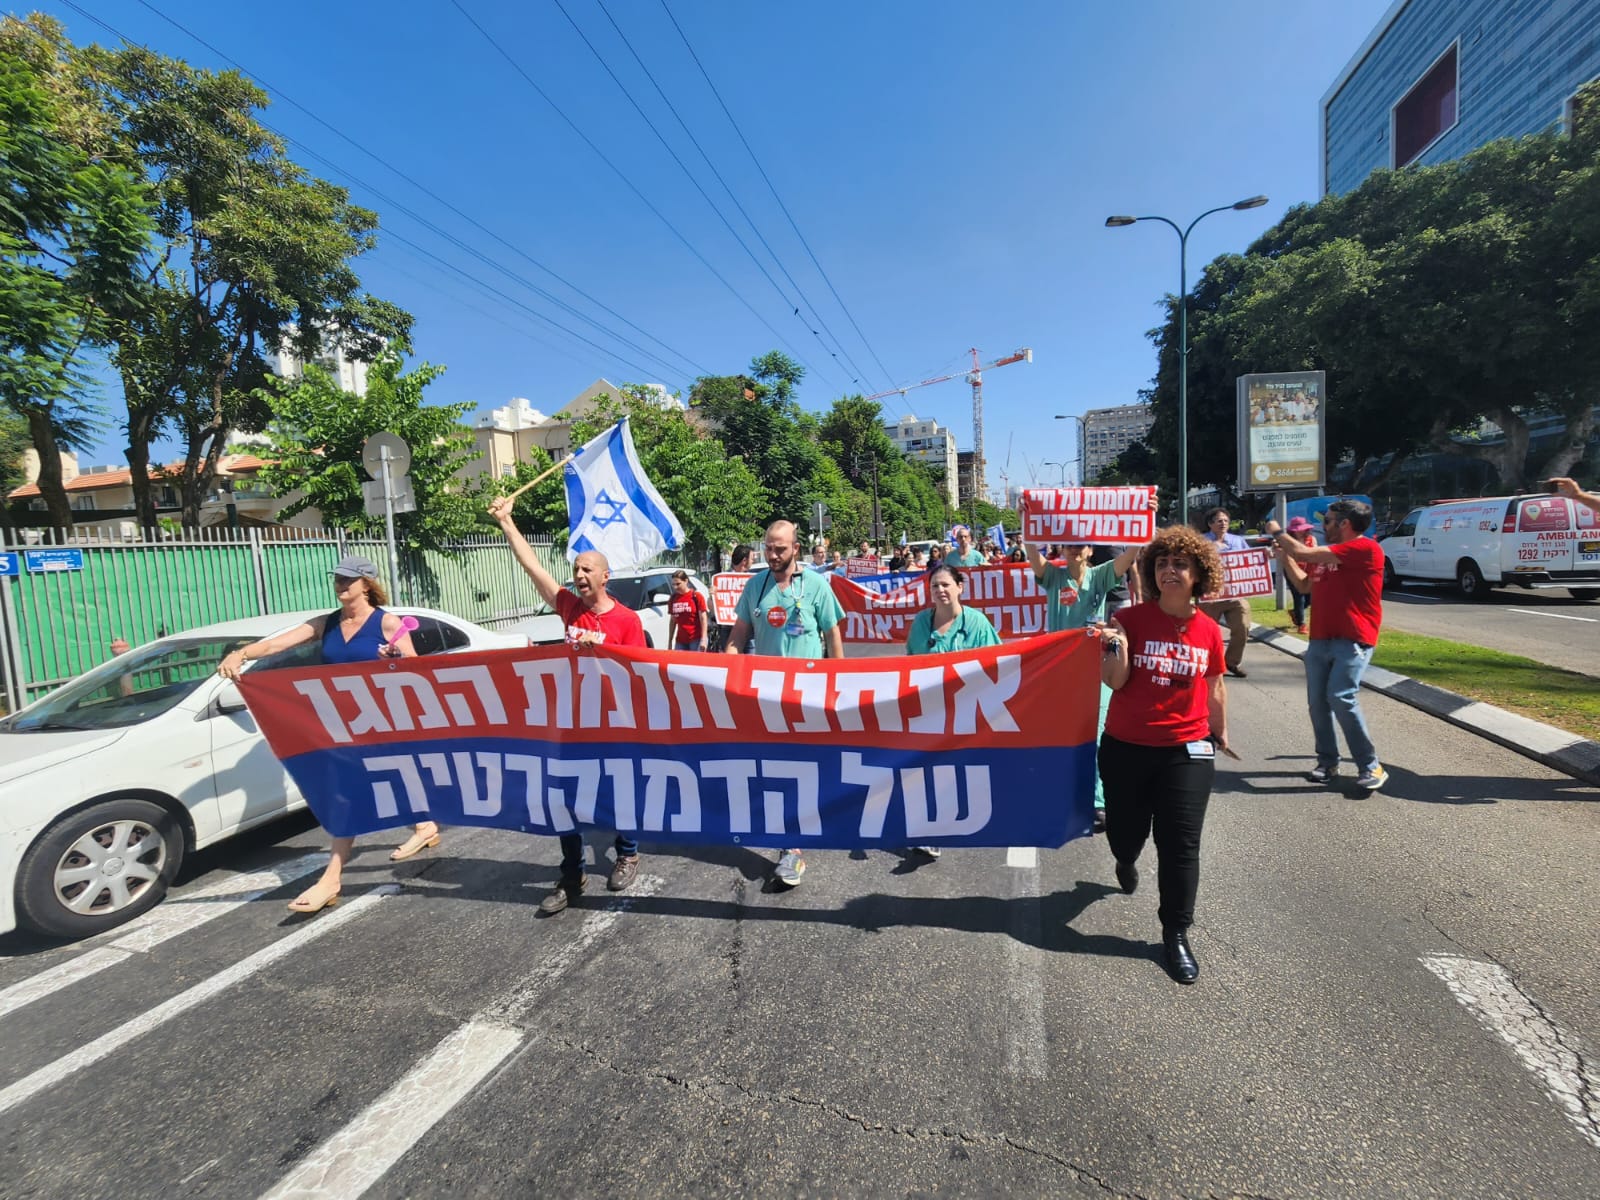 הפגנת רופאים בבית החולים איכילוב בתל אביב במהלך שביתה של ההסתדרות הרפואית נגד הרפורמה במערכת המשפט (צילום: דפנה איזברוך)